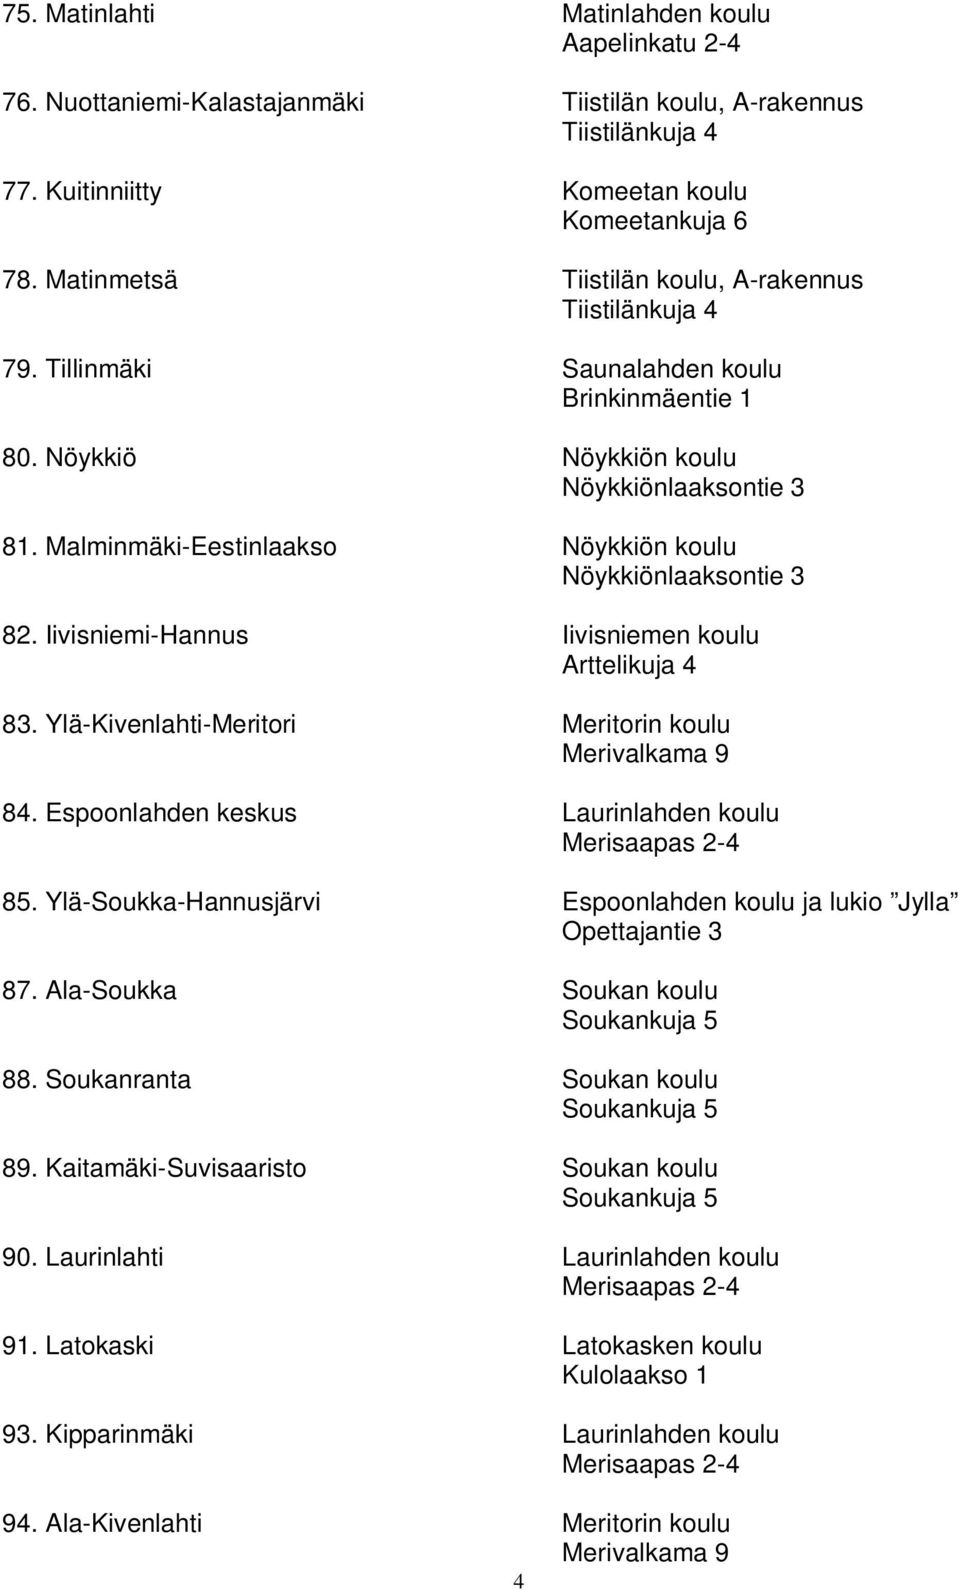 Malminmäki-Eestinlaakso Nöykkiön koulu Nöykkiönlaaksontie 3 82. Iivisniemi-Hannus Iivisniemen koulu Arttelikuja 4 83. Ylä-Kivenlahti-Meritori Meritorin koulu Merivalkama 9 84.